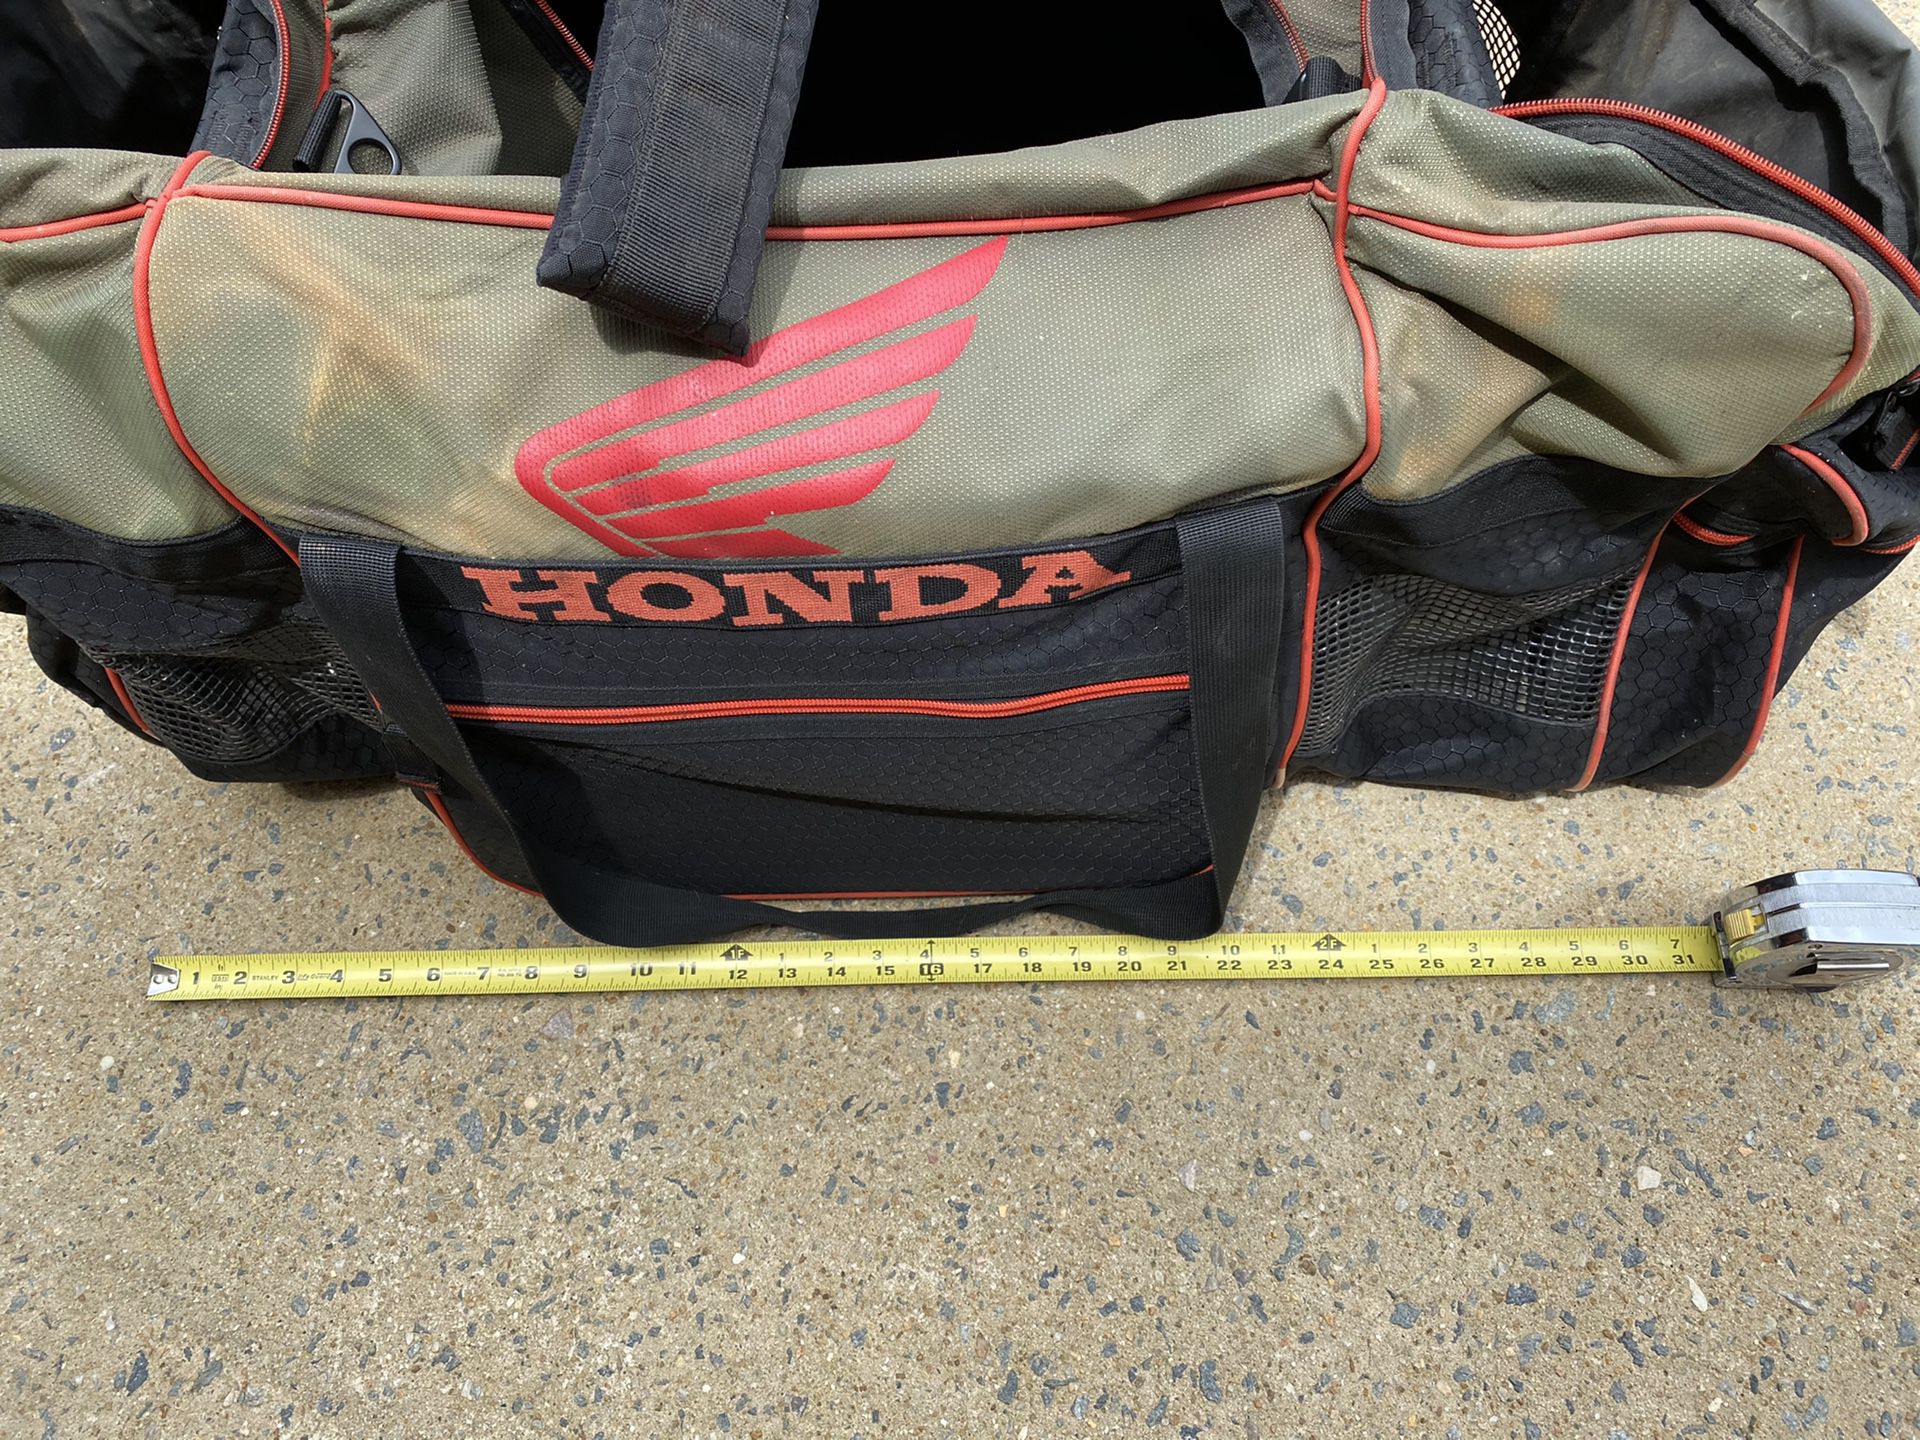 Honda Fox Motocross Gear Bag heavy duty for boots and armor